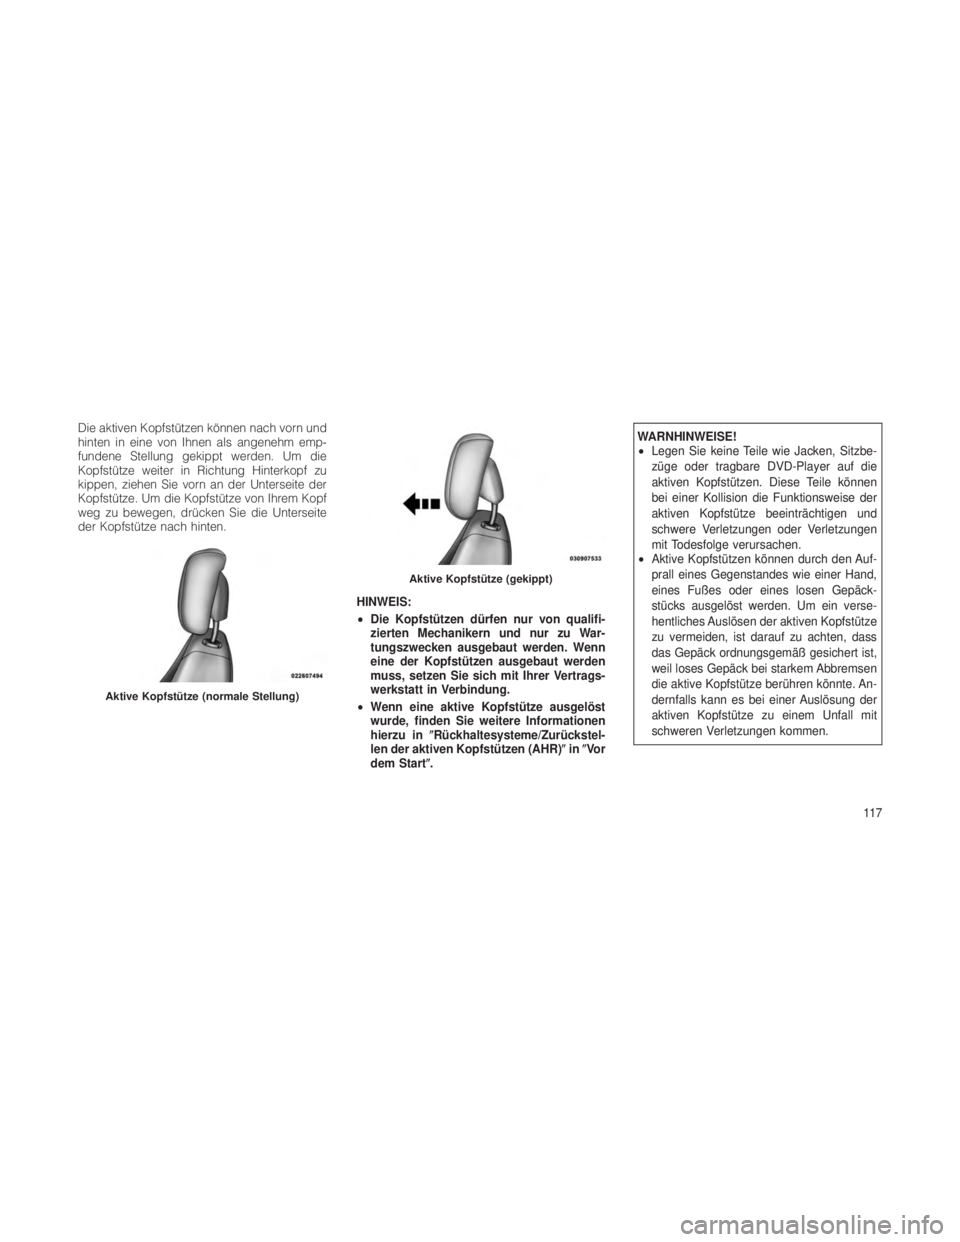 JEEP GRAND CHEROKEE 2012  Betriebsanleitung (in German) Die aktiven Kopfstützen können nach vorn und
hinten in eine von Ihnen als angenehm emp-
fundene Stellung gekippt werden. Um die
Kopfstütze weiter in Richtung Hinterkopf zu
kippen, ziehen Sie vorn a